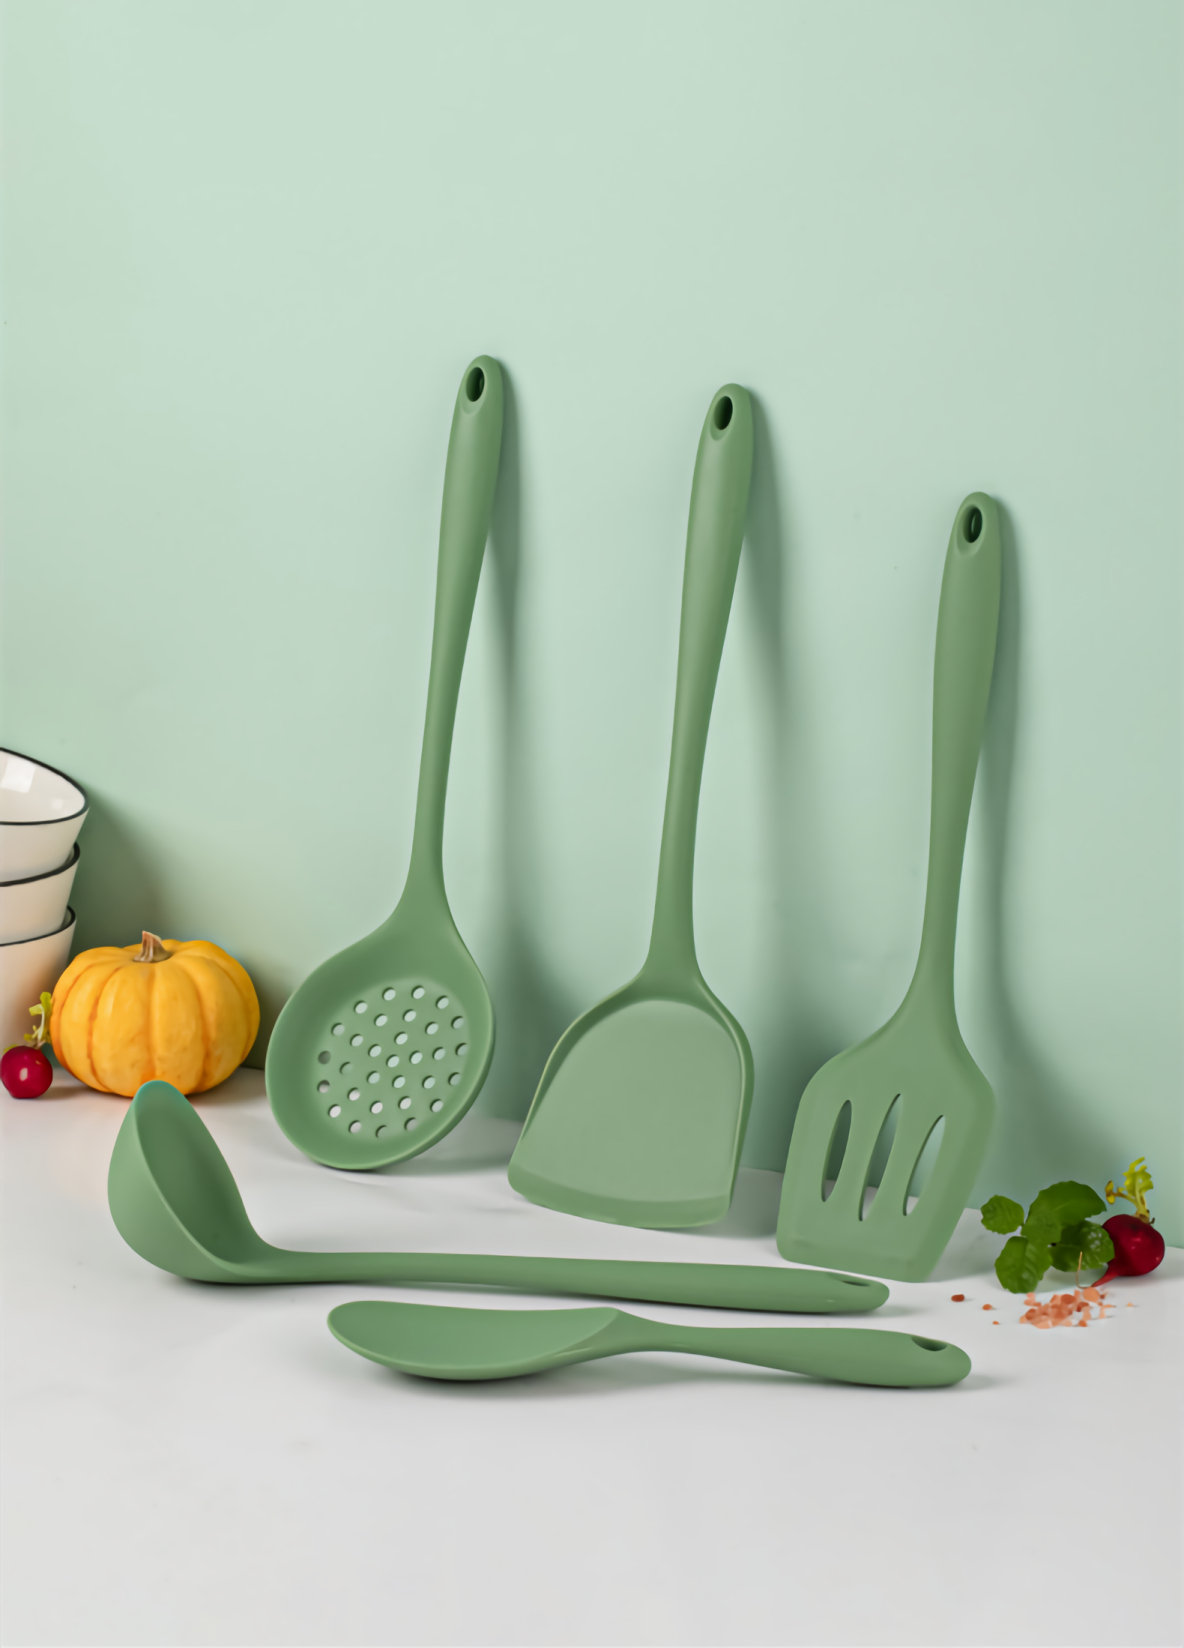 https://assets.wfcdn.com/im/64495337/compr-r85/2190/219043949/5-piece-silicone-assorted-kitchen-utensil-set.jpg